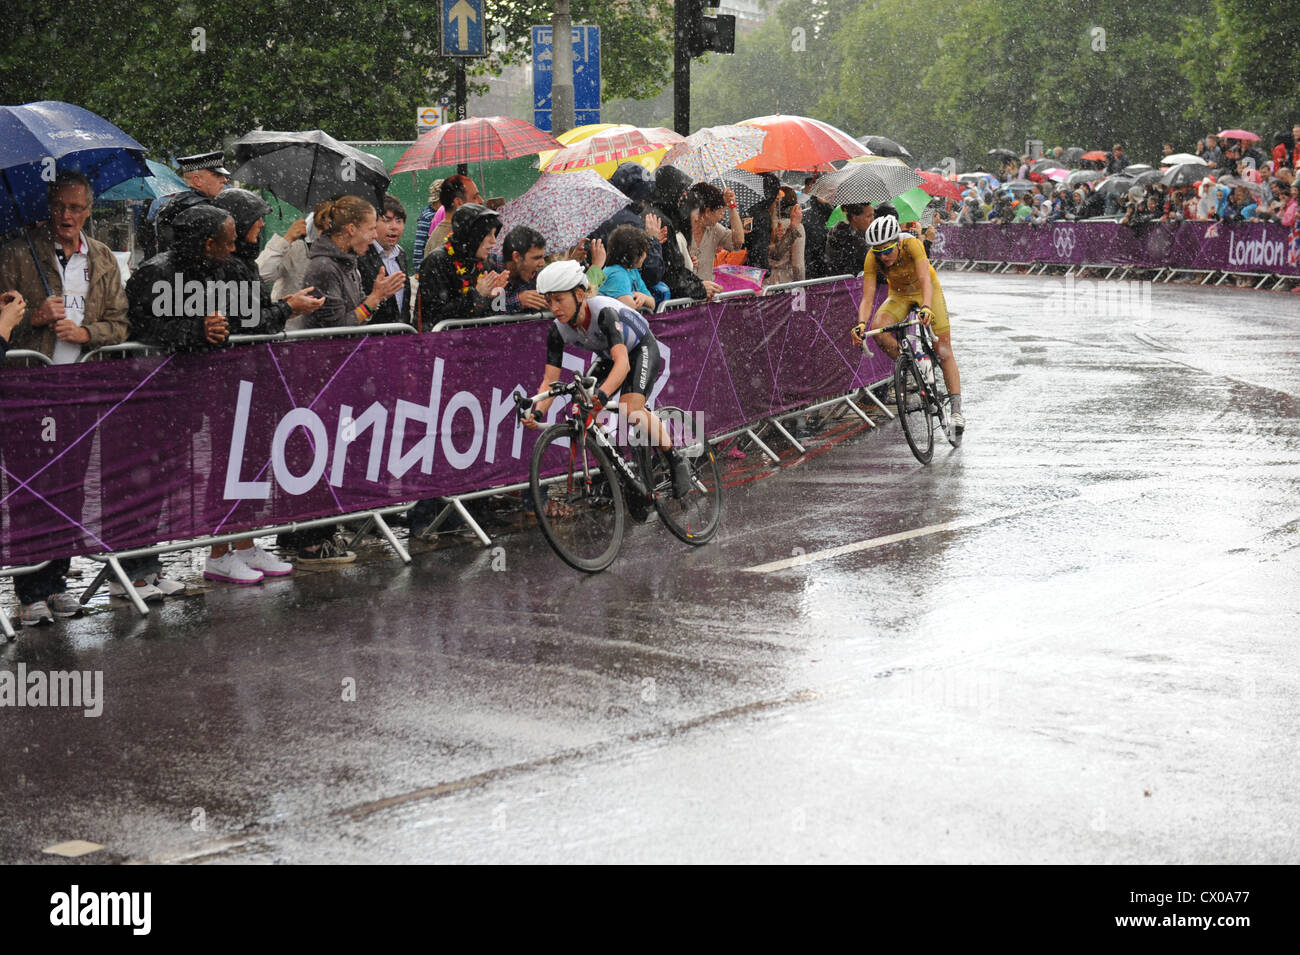 Emma Pooley et Shara Gillow du cyclisme féminin dans la course sur route aux Jeux Olympiques 2012 Banque D'Images